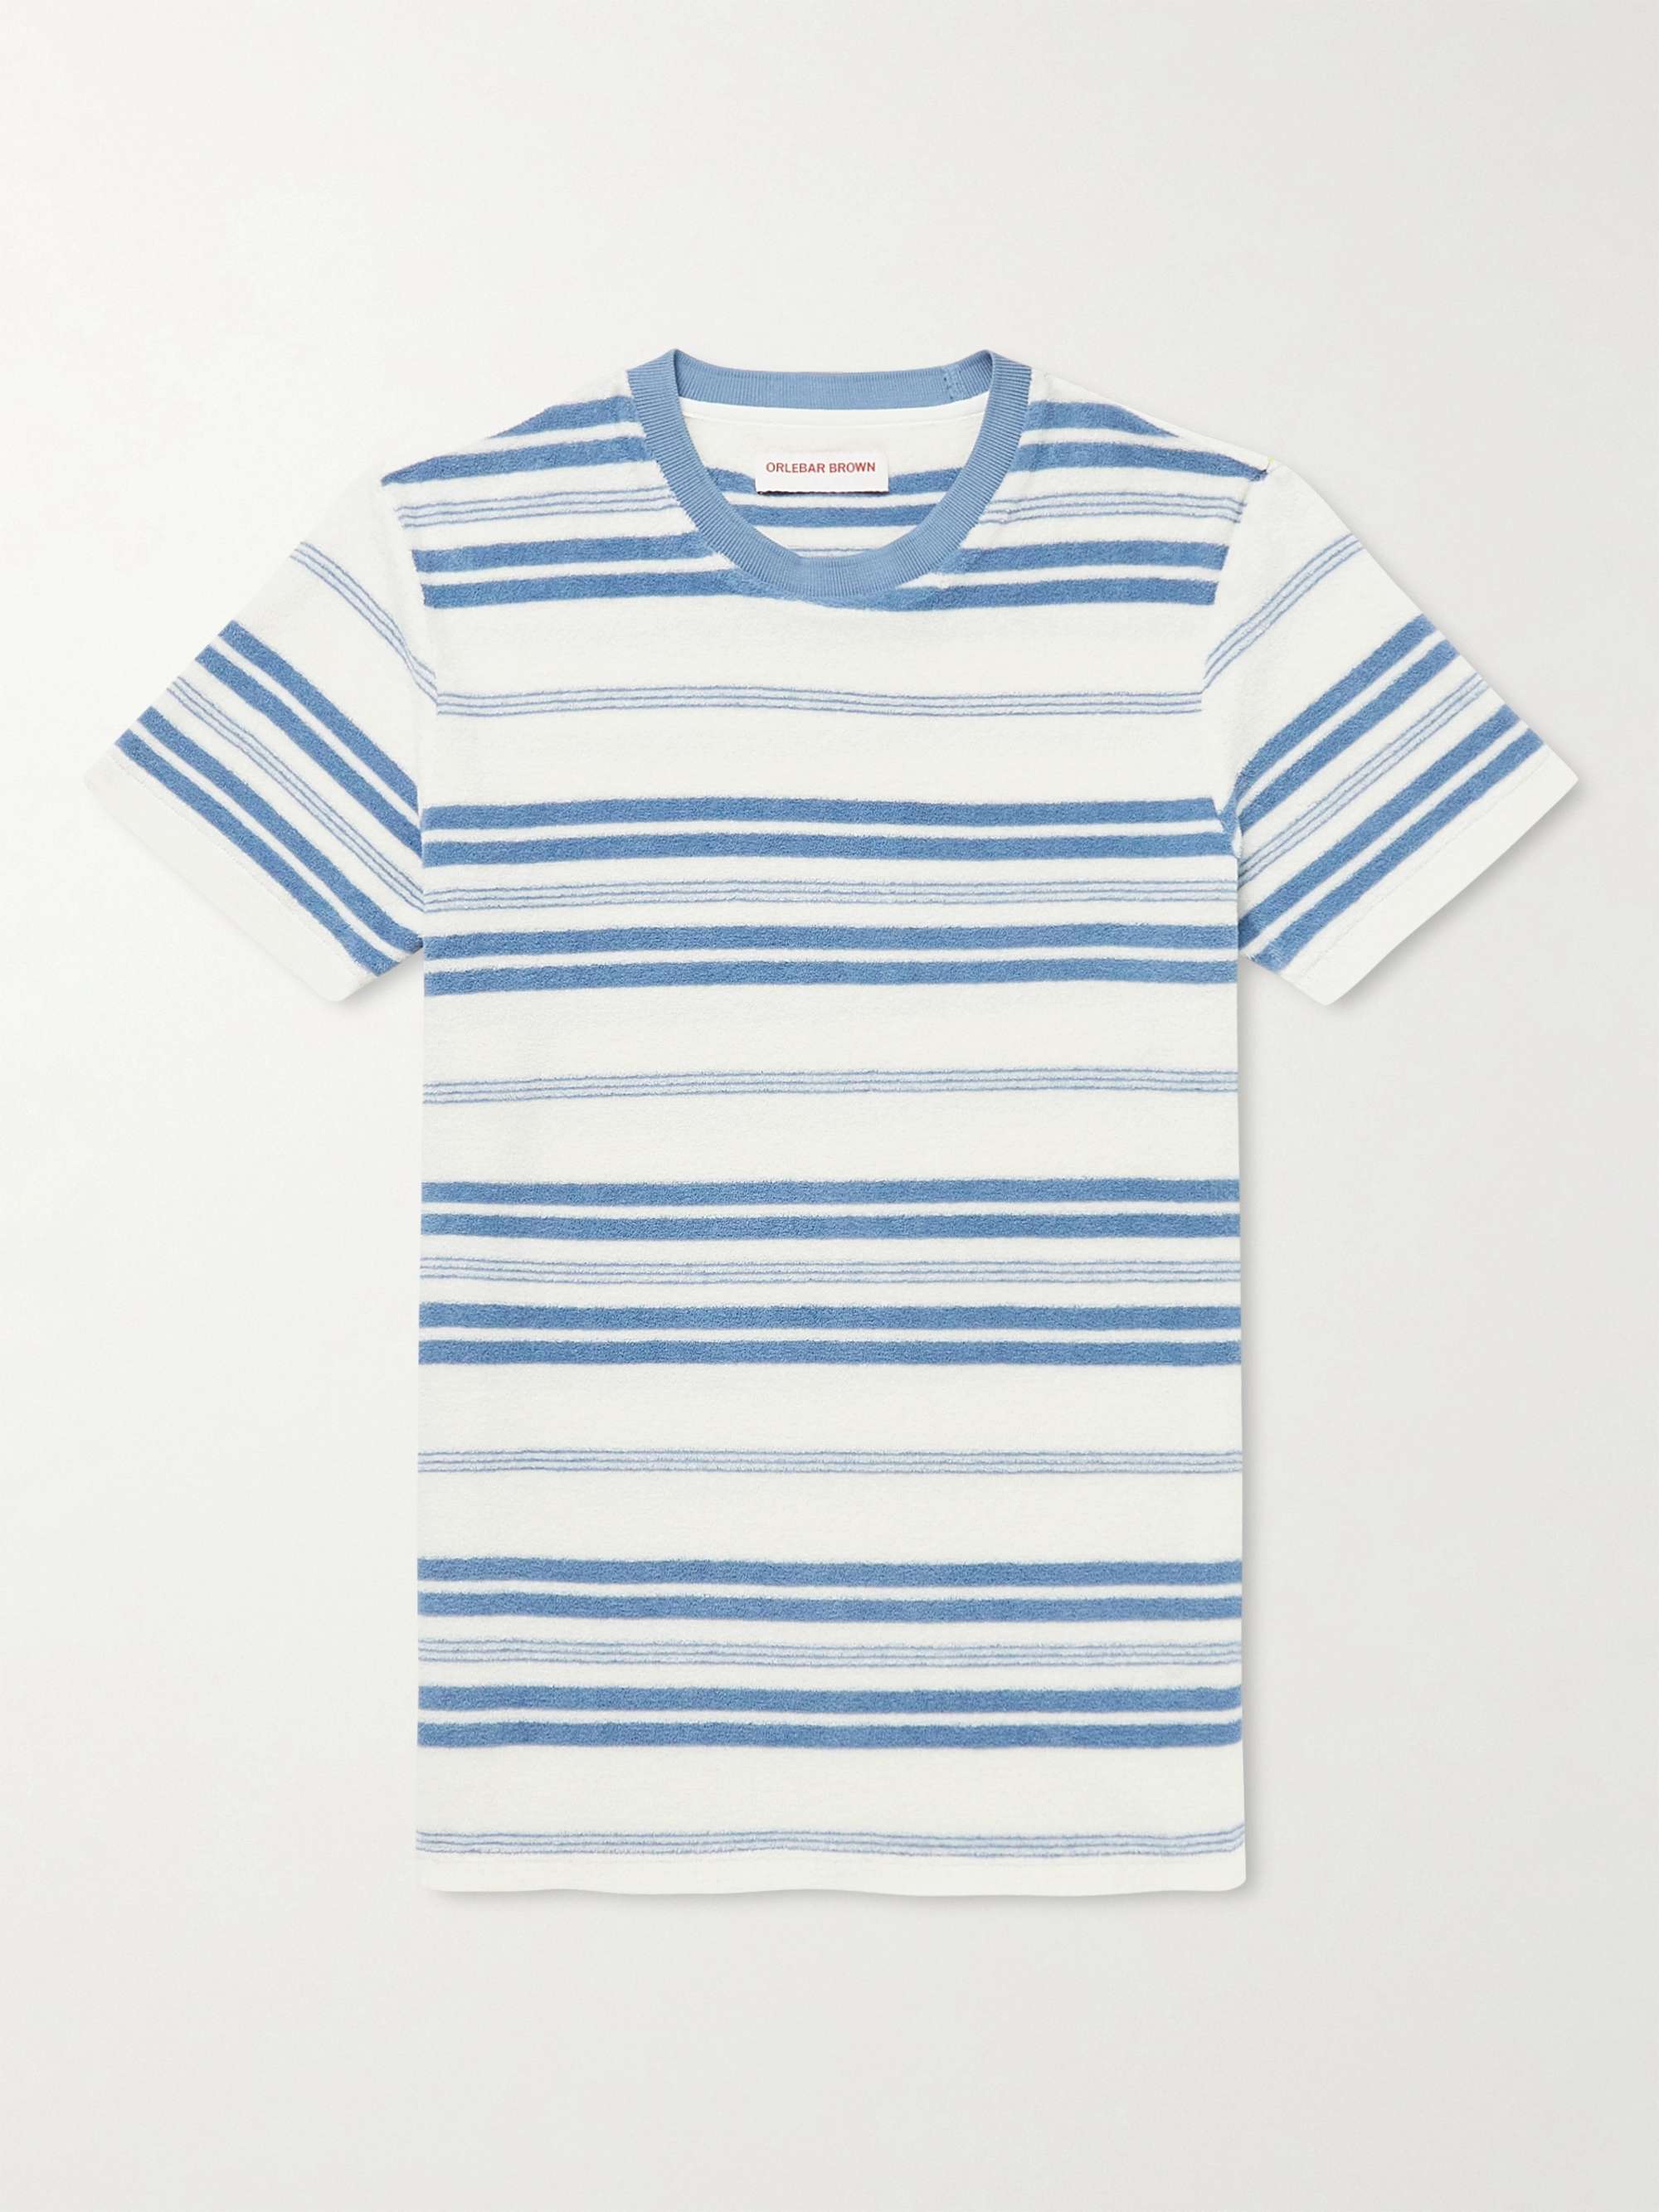 ORLEBAR BROWN Sammy Striped Cotton-Terry T-Shirt